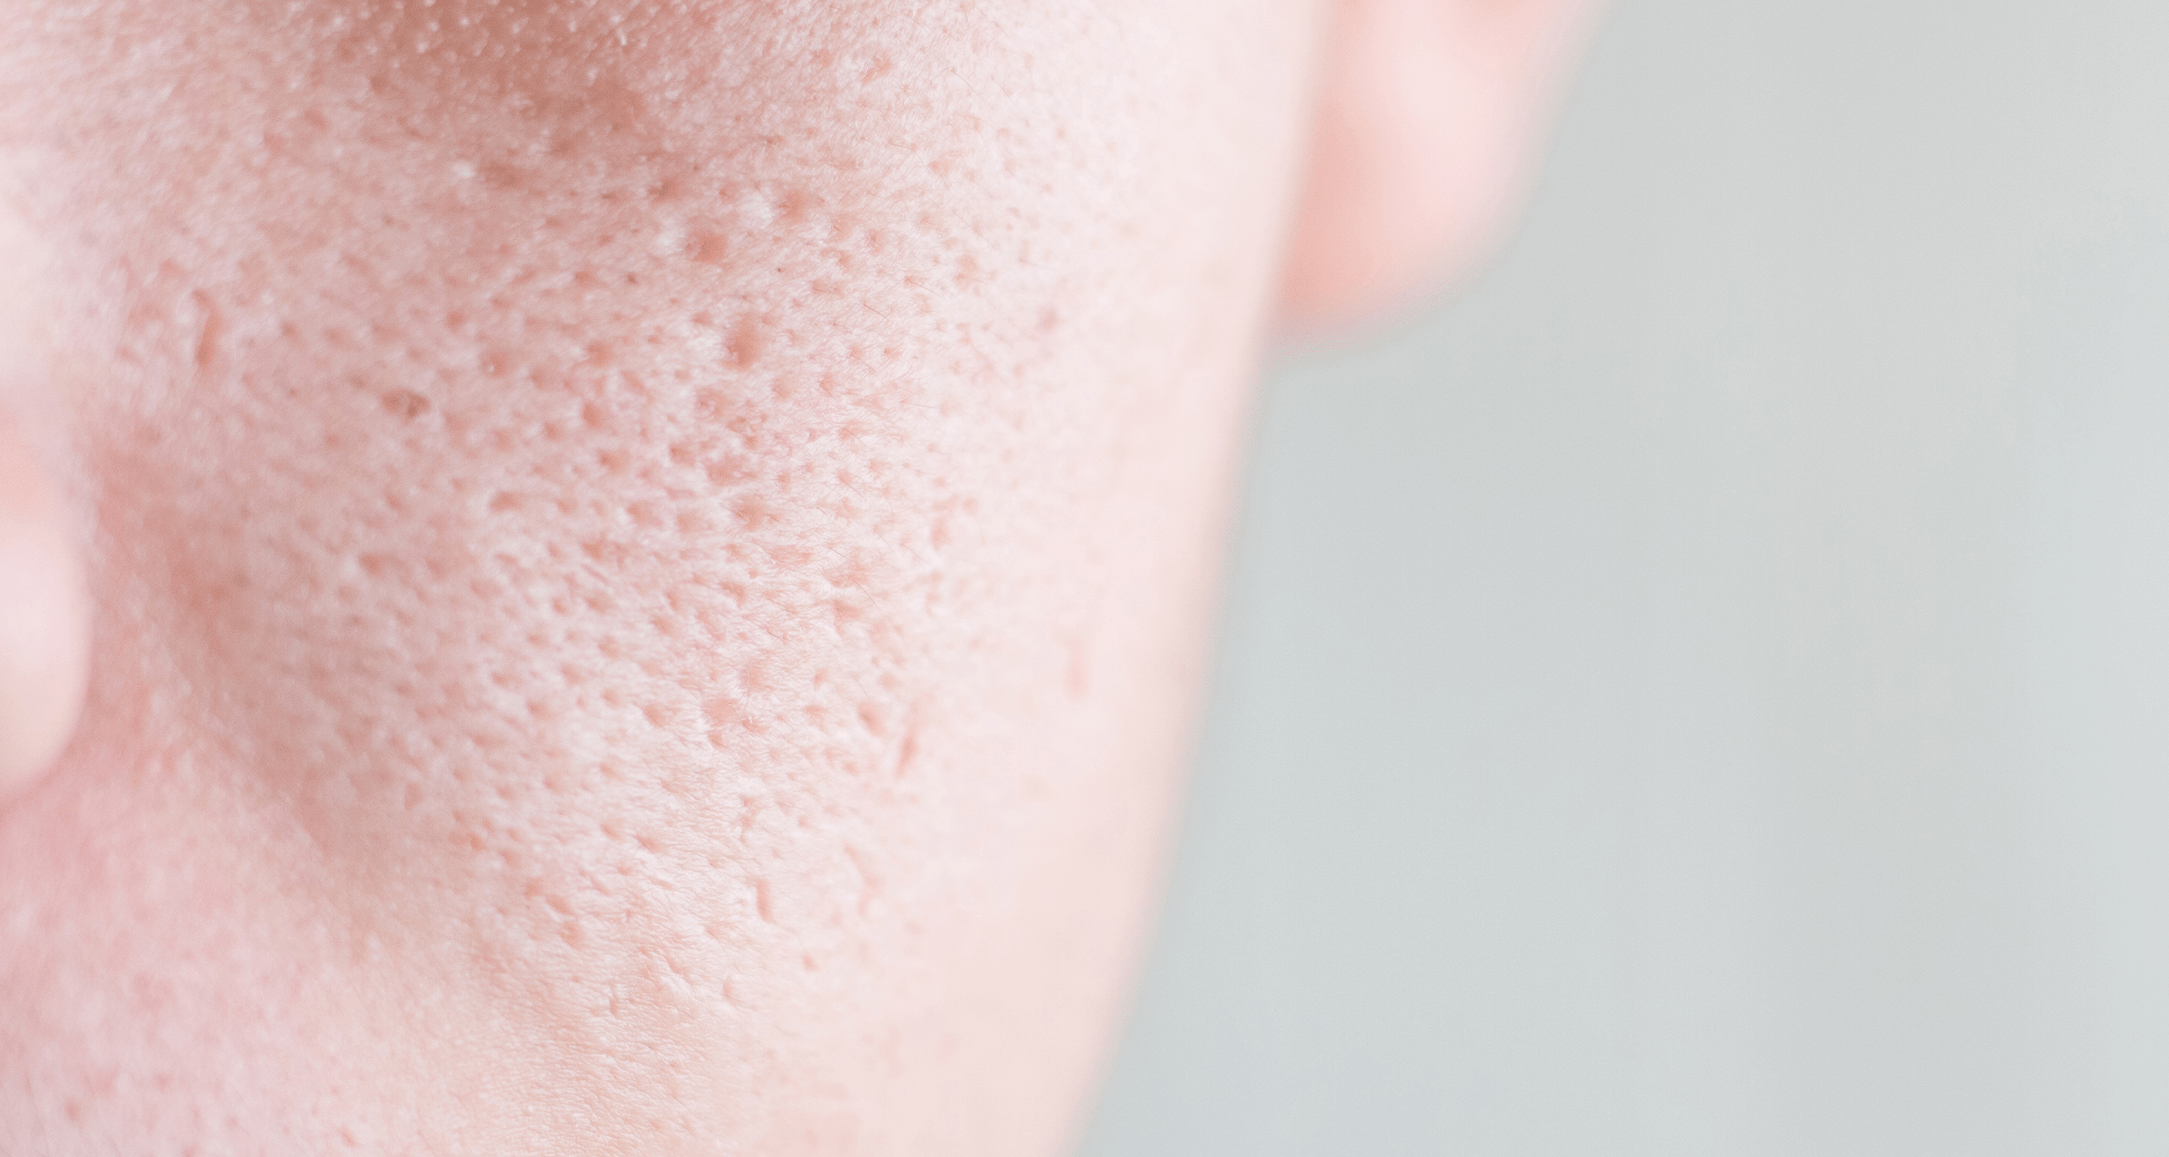 Close up of clogged pores